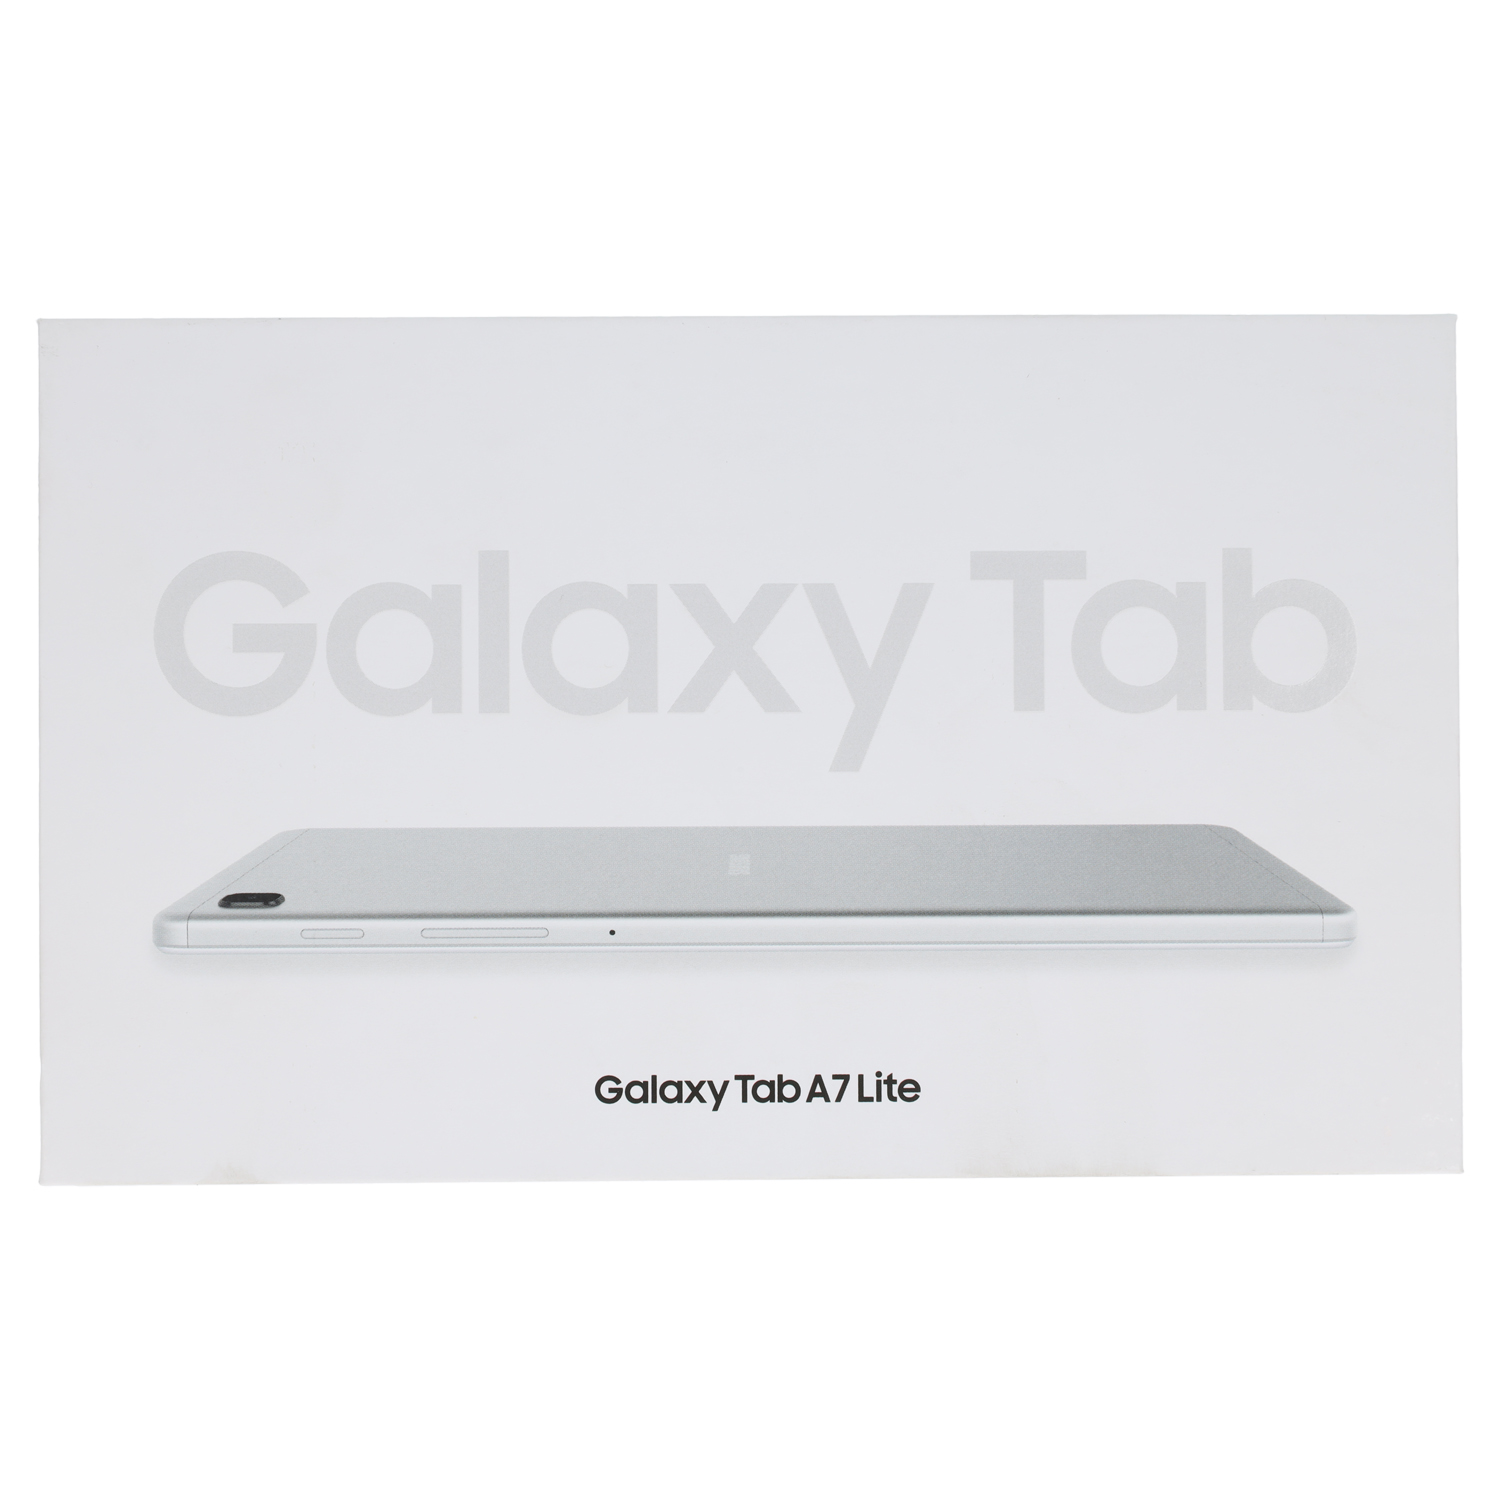 Samsung Galaxy Tab A7 Lite (SM-T220) 32 GB WiFi, Silber